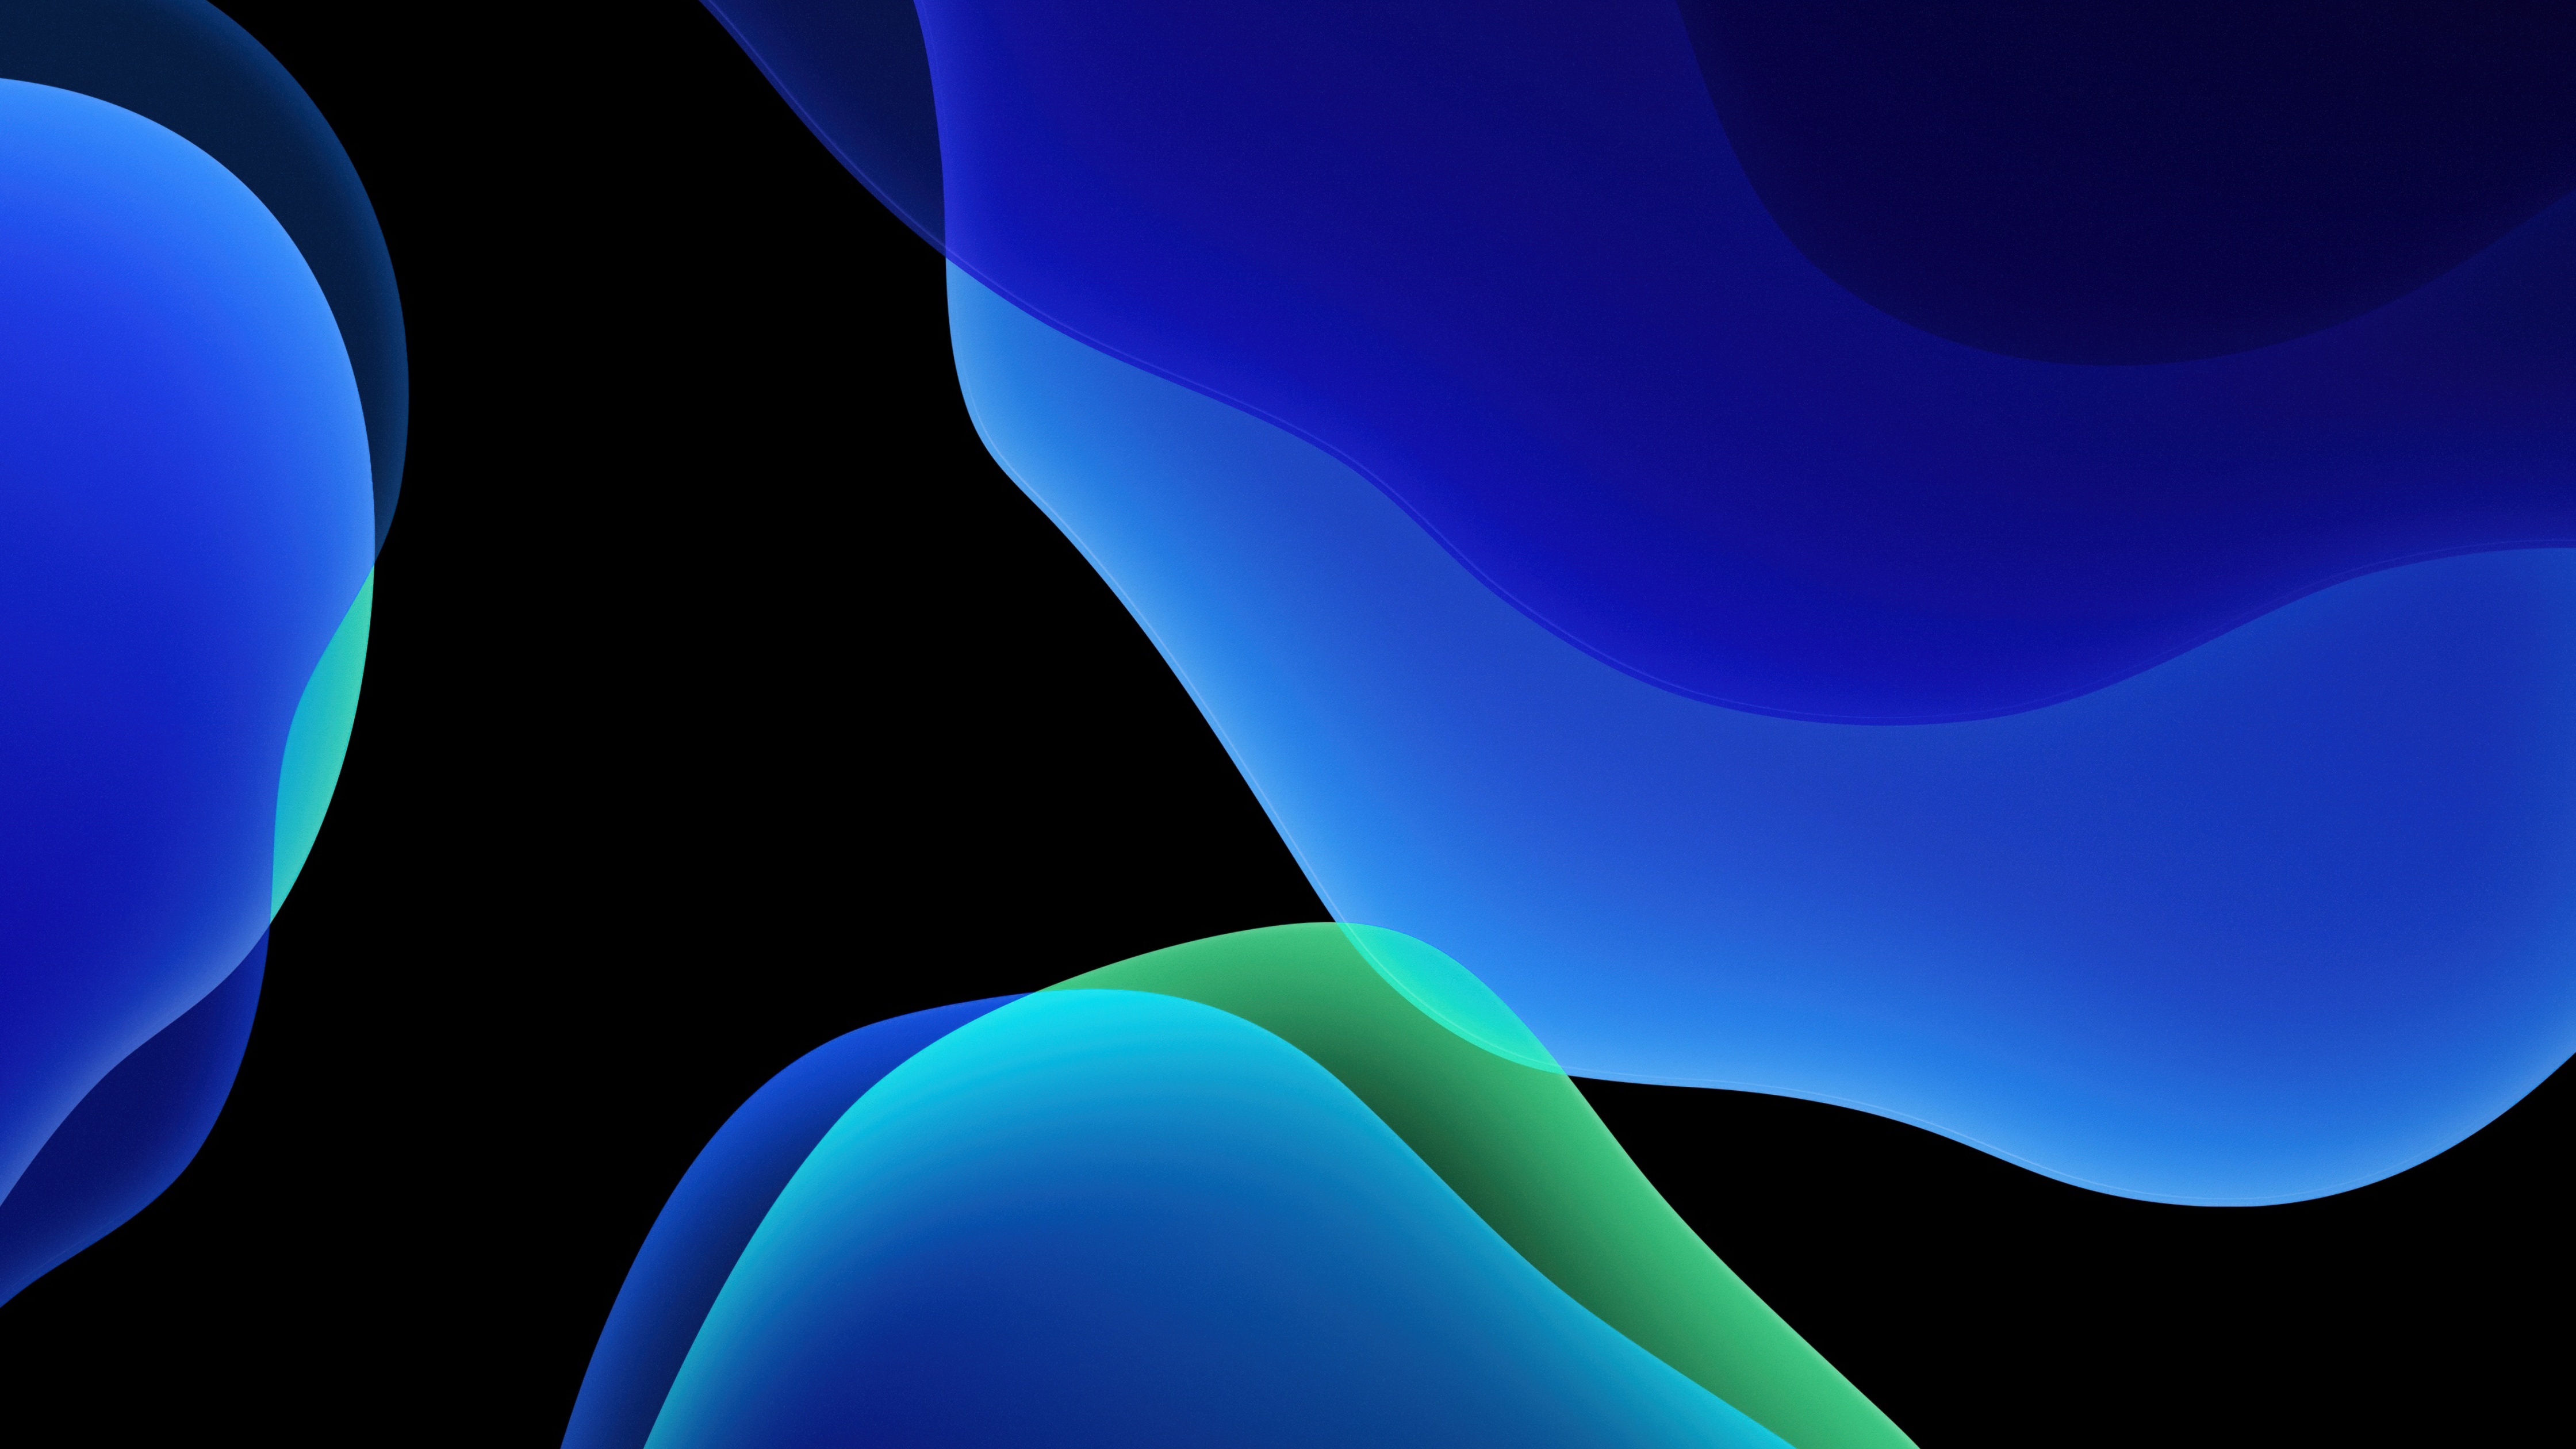 Cập nhật cho thiết bị của bạn với hình nền iOS 13 mới nhất và tuyệt đẹp. Được thiết kế với độ phân giải 4K, hình nền này với gam màu xanh trừu tượng sẽ mang đến cho bạn cảm giác tươi mới và sáng tạo. Tải ngay để trải nghiệm công nghệ tiên tiến của Apple.